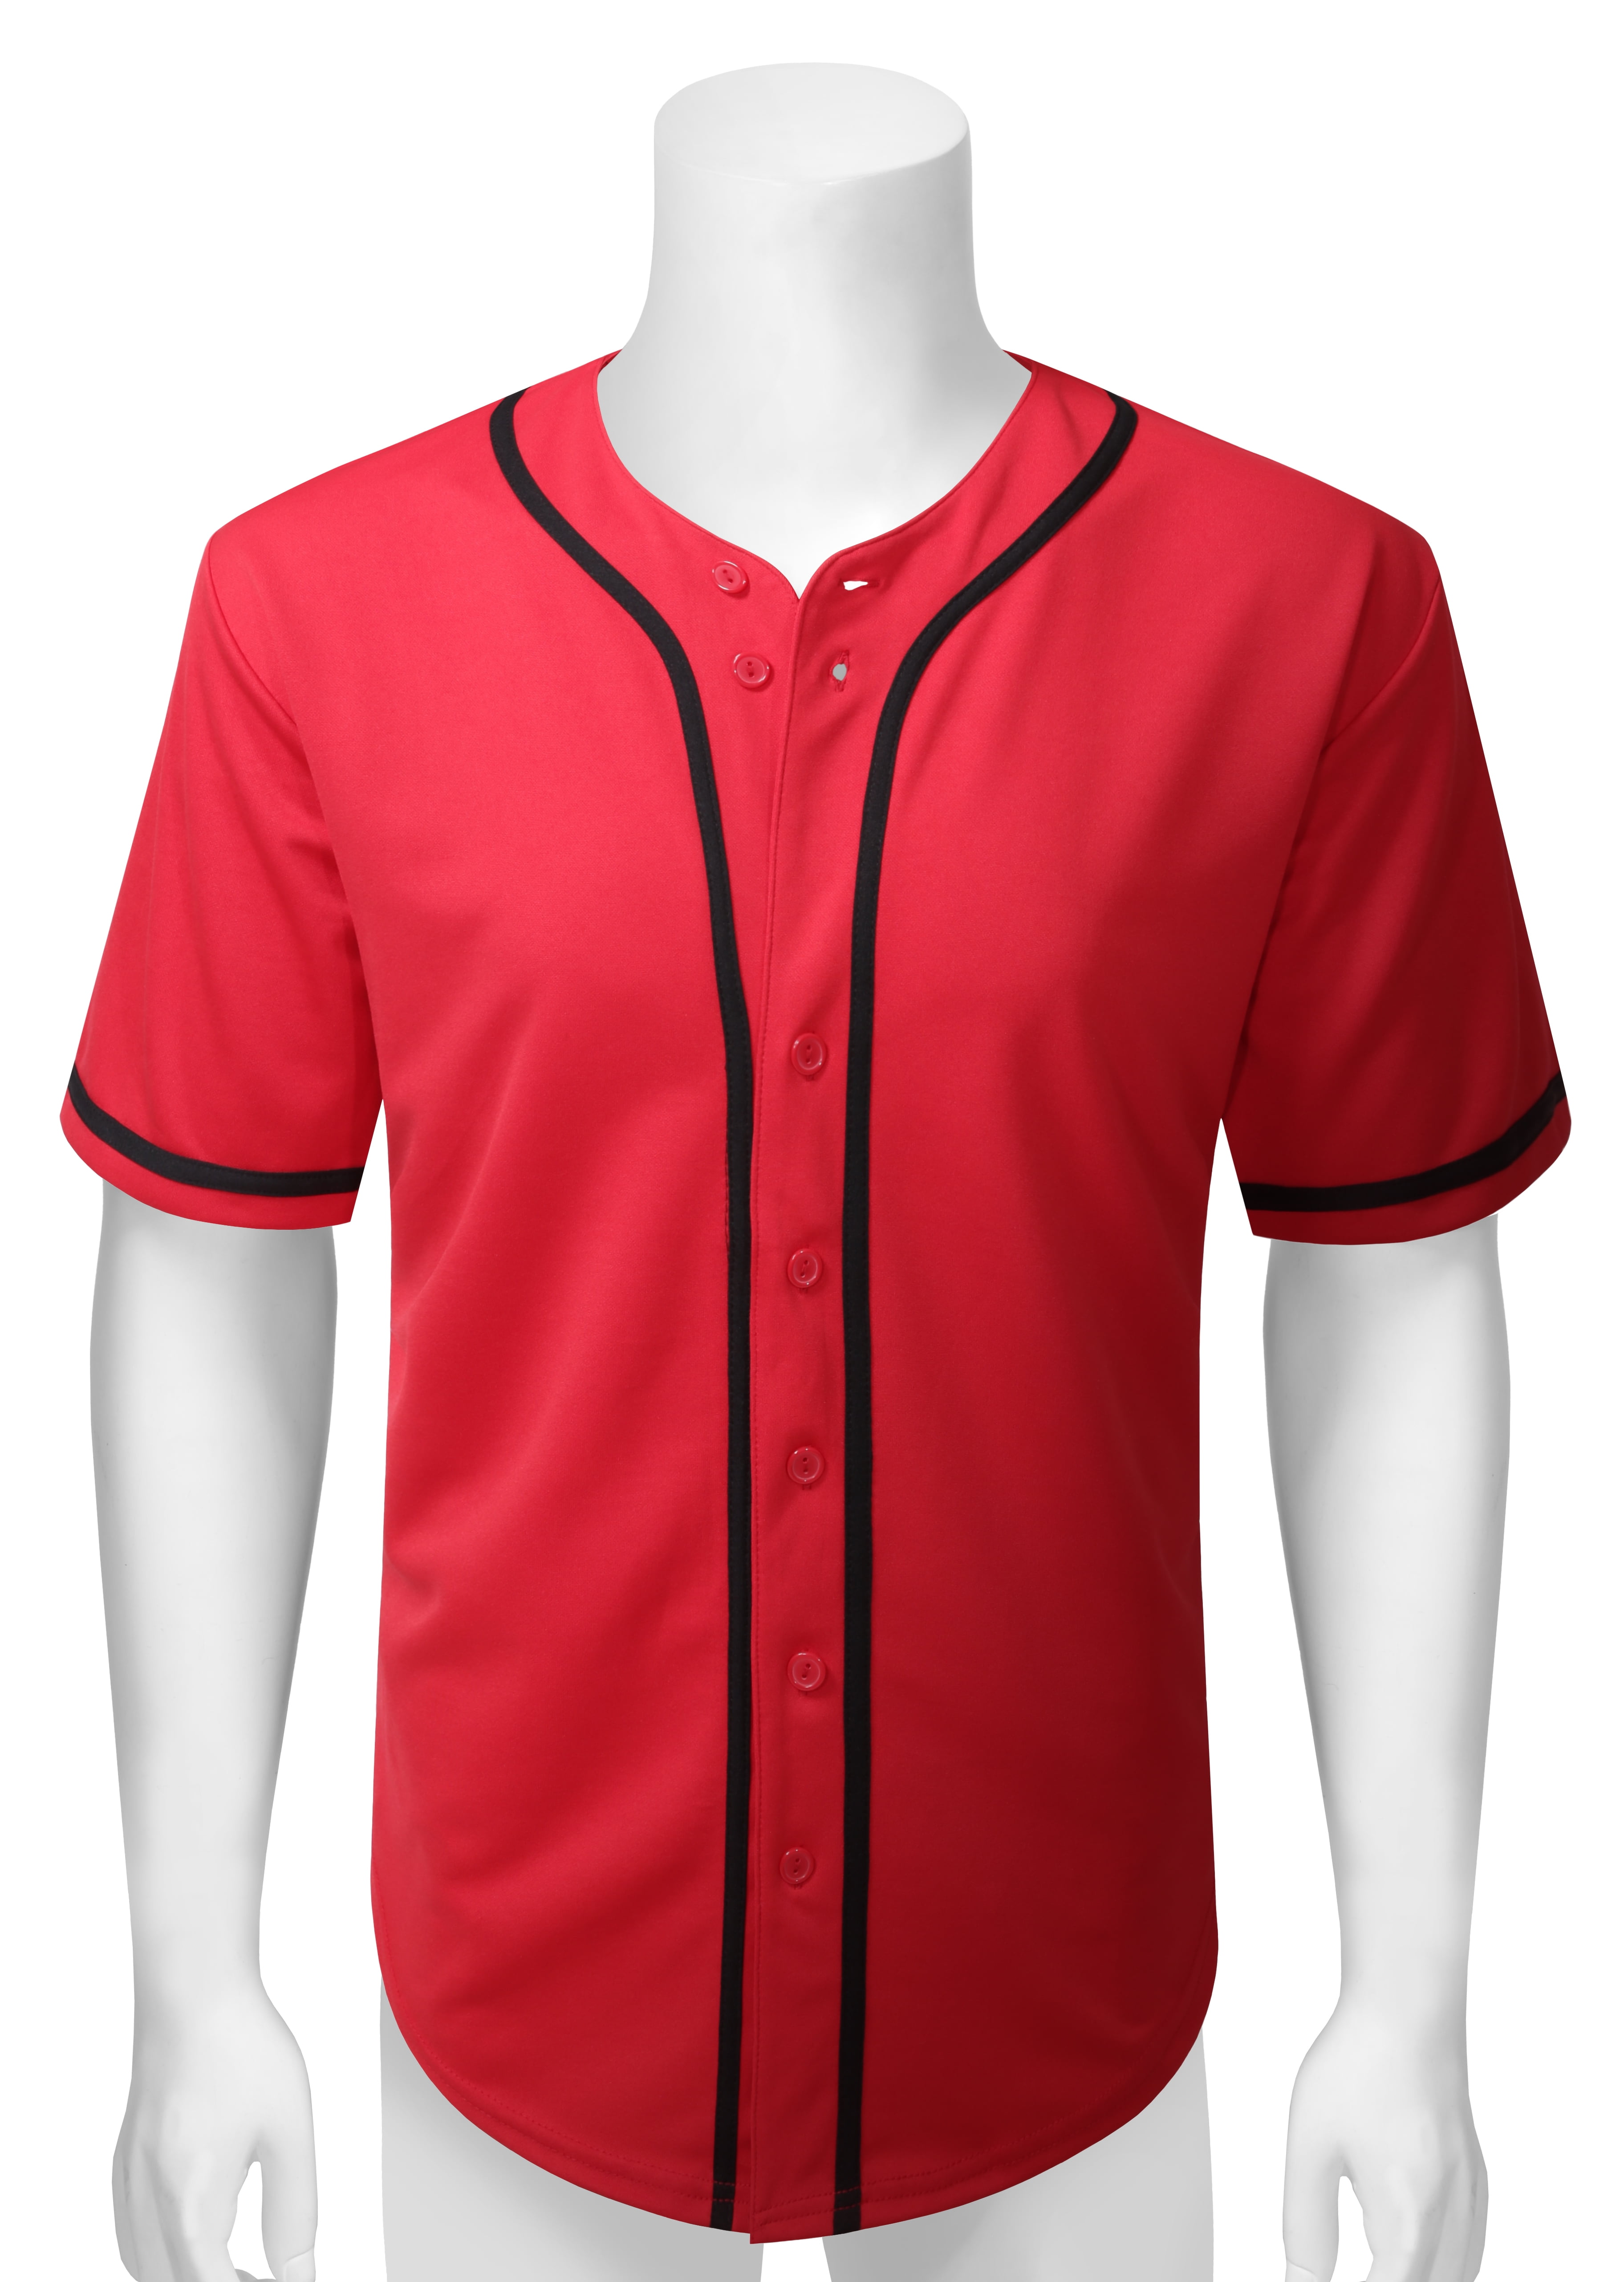 Allsense Men's Basic Sport Outline Baseball Jersey Classic Short Sleeve Shirt  Red 3XL 